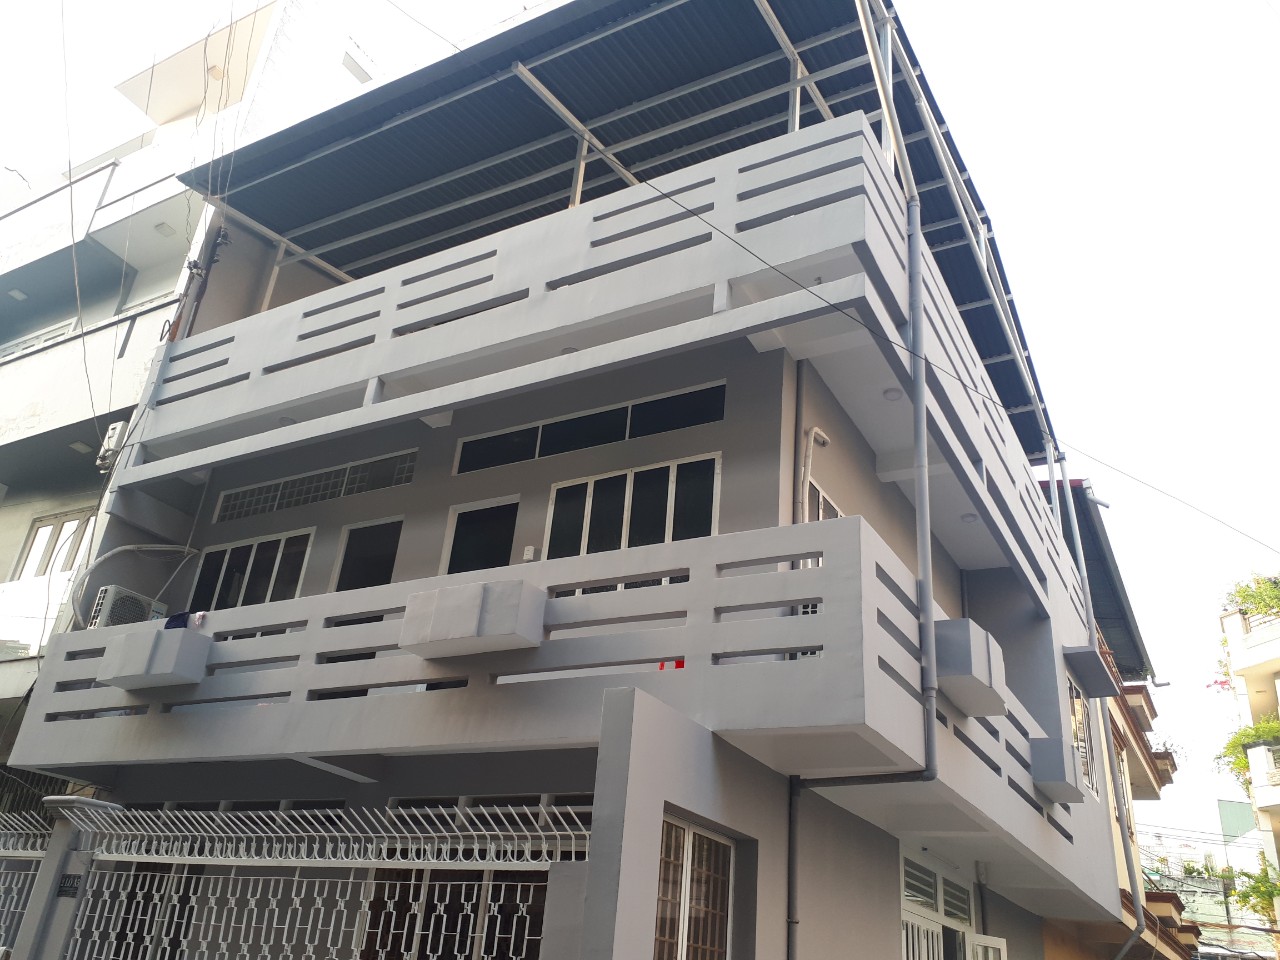 Bán 2 căn nhà liền kề đường Nhiêu Tâm gần Trần Hưng Đạo, Q5, 8 x 25m, 3 lầu cũ. Giá chỉ 67 tỷ TL